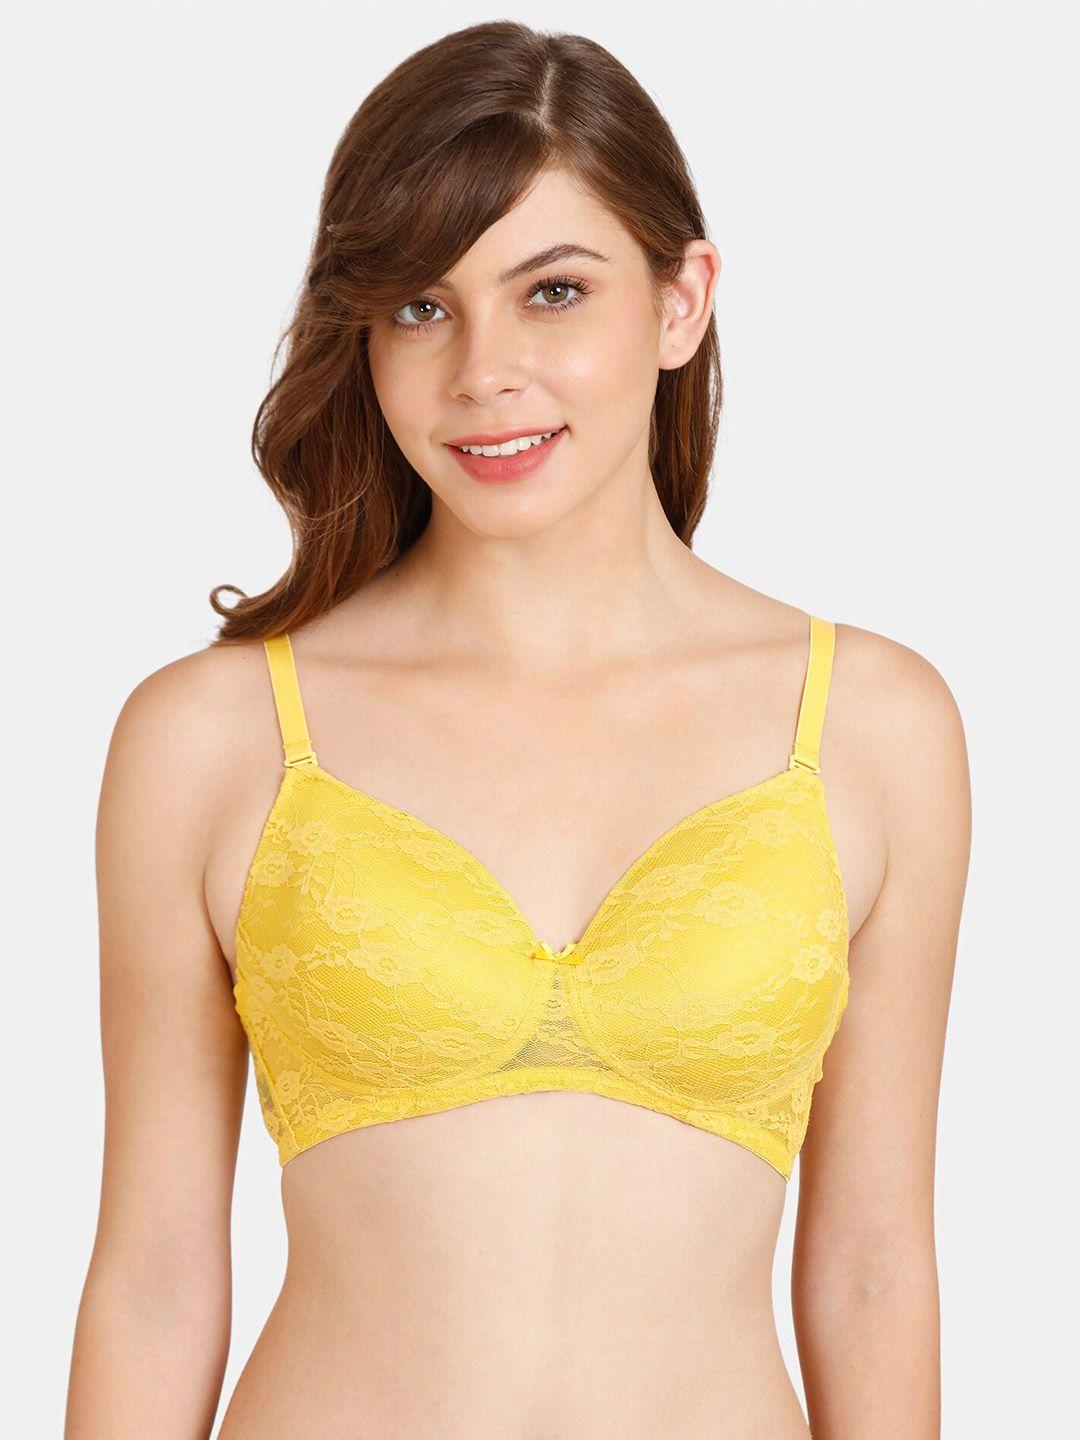 rosaline by zivame women yellow bra